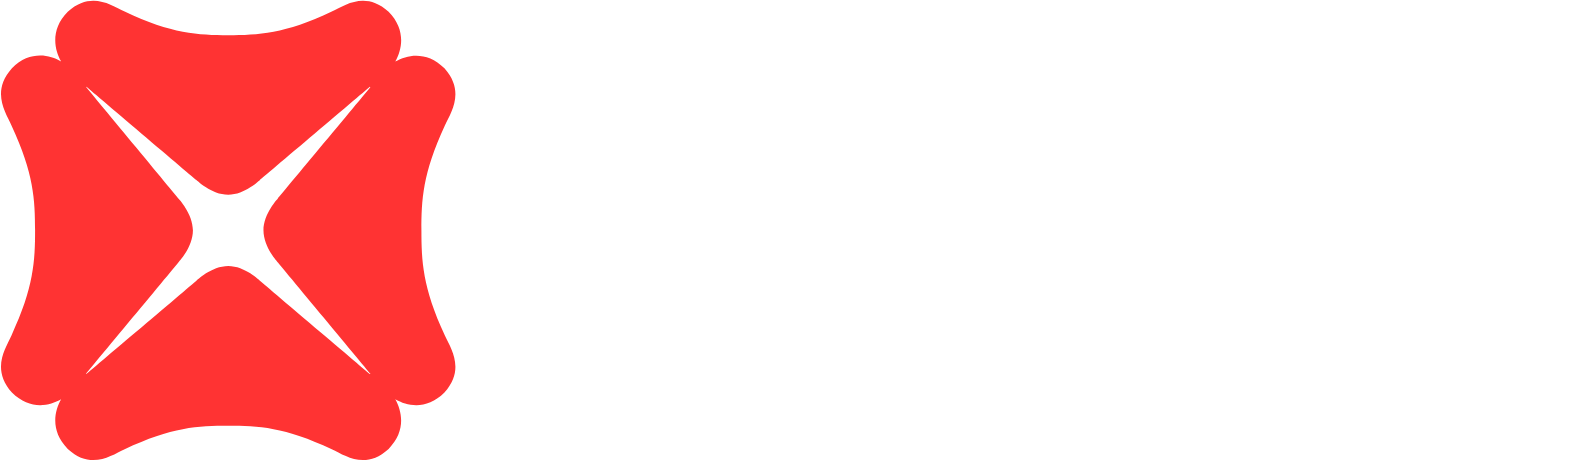 DBS Group logo grand pour les fonds sombres (PNG transparent)